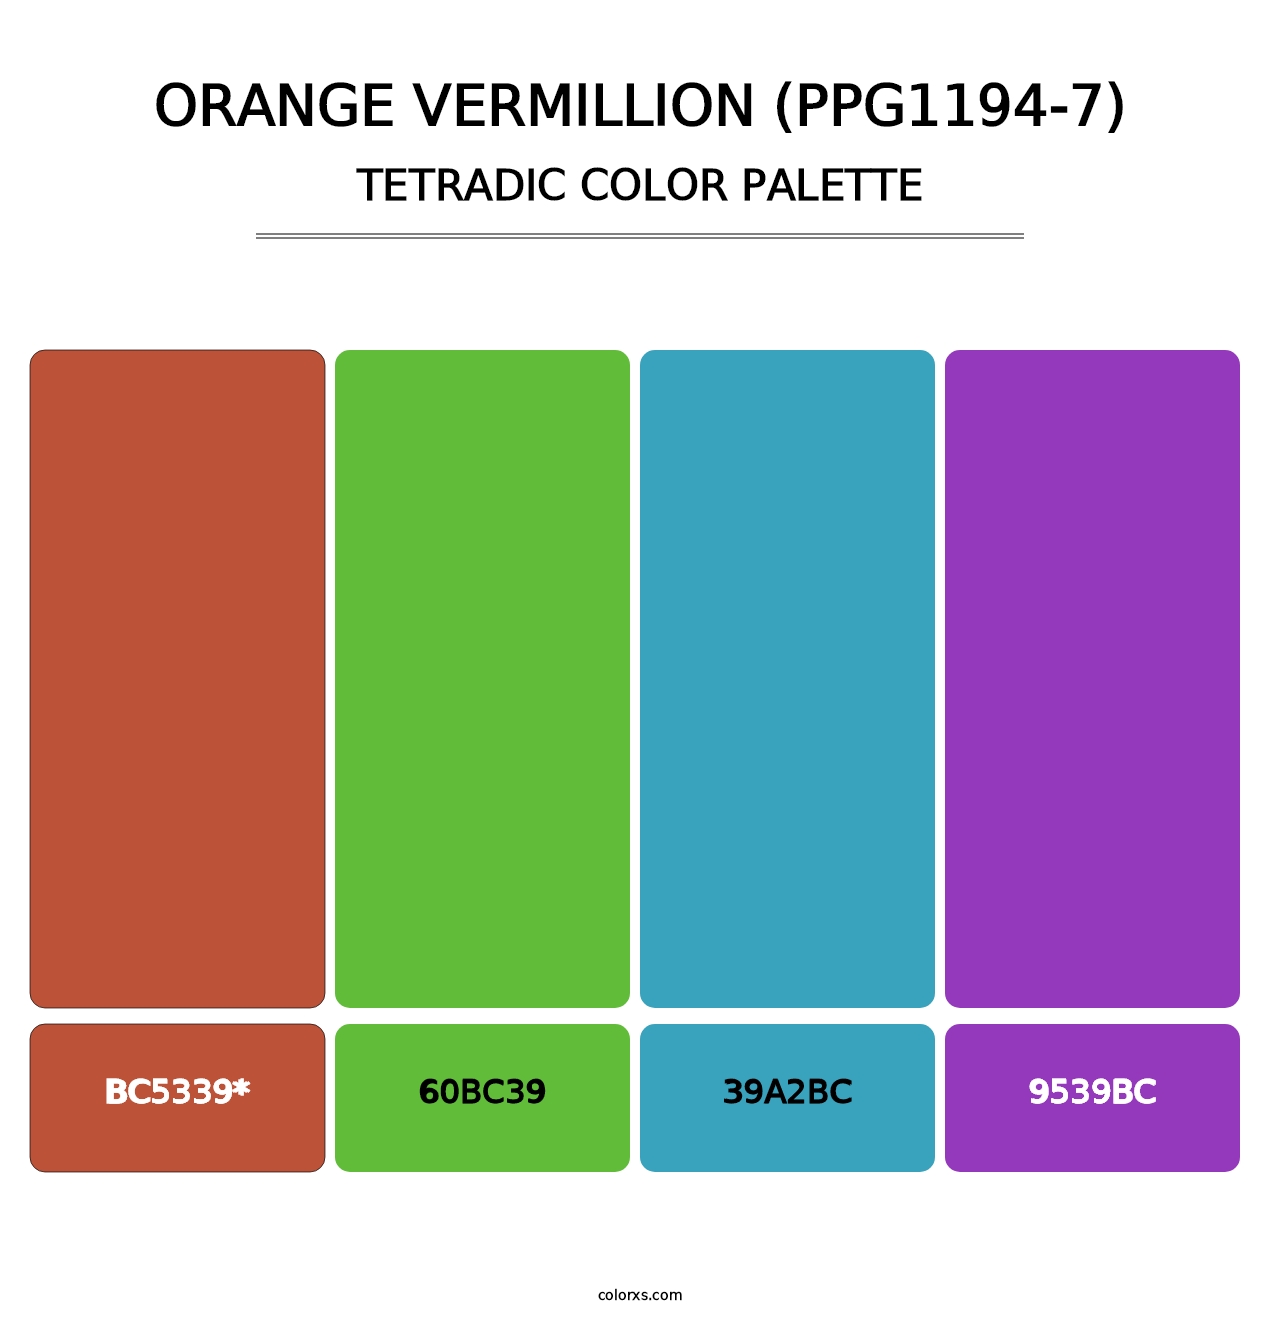 Orange Vermillion (PPG1194-7) - Tetradic Color Palette